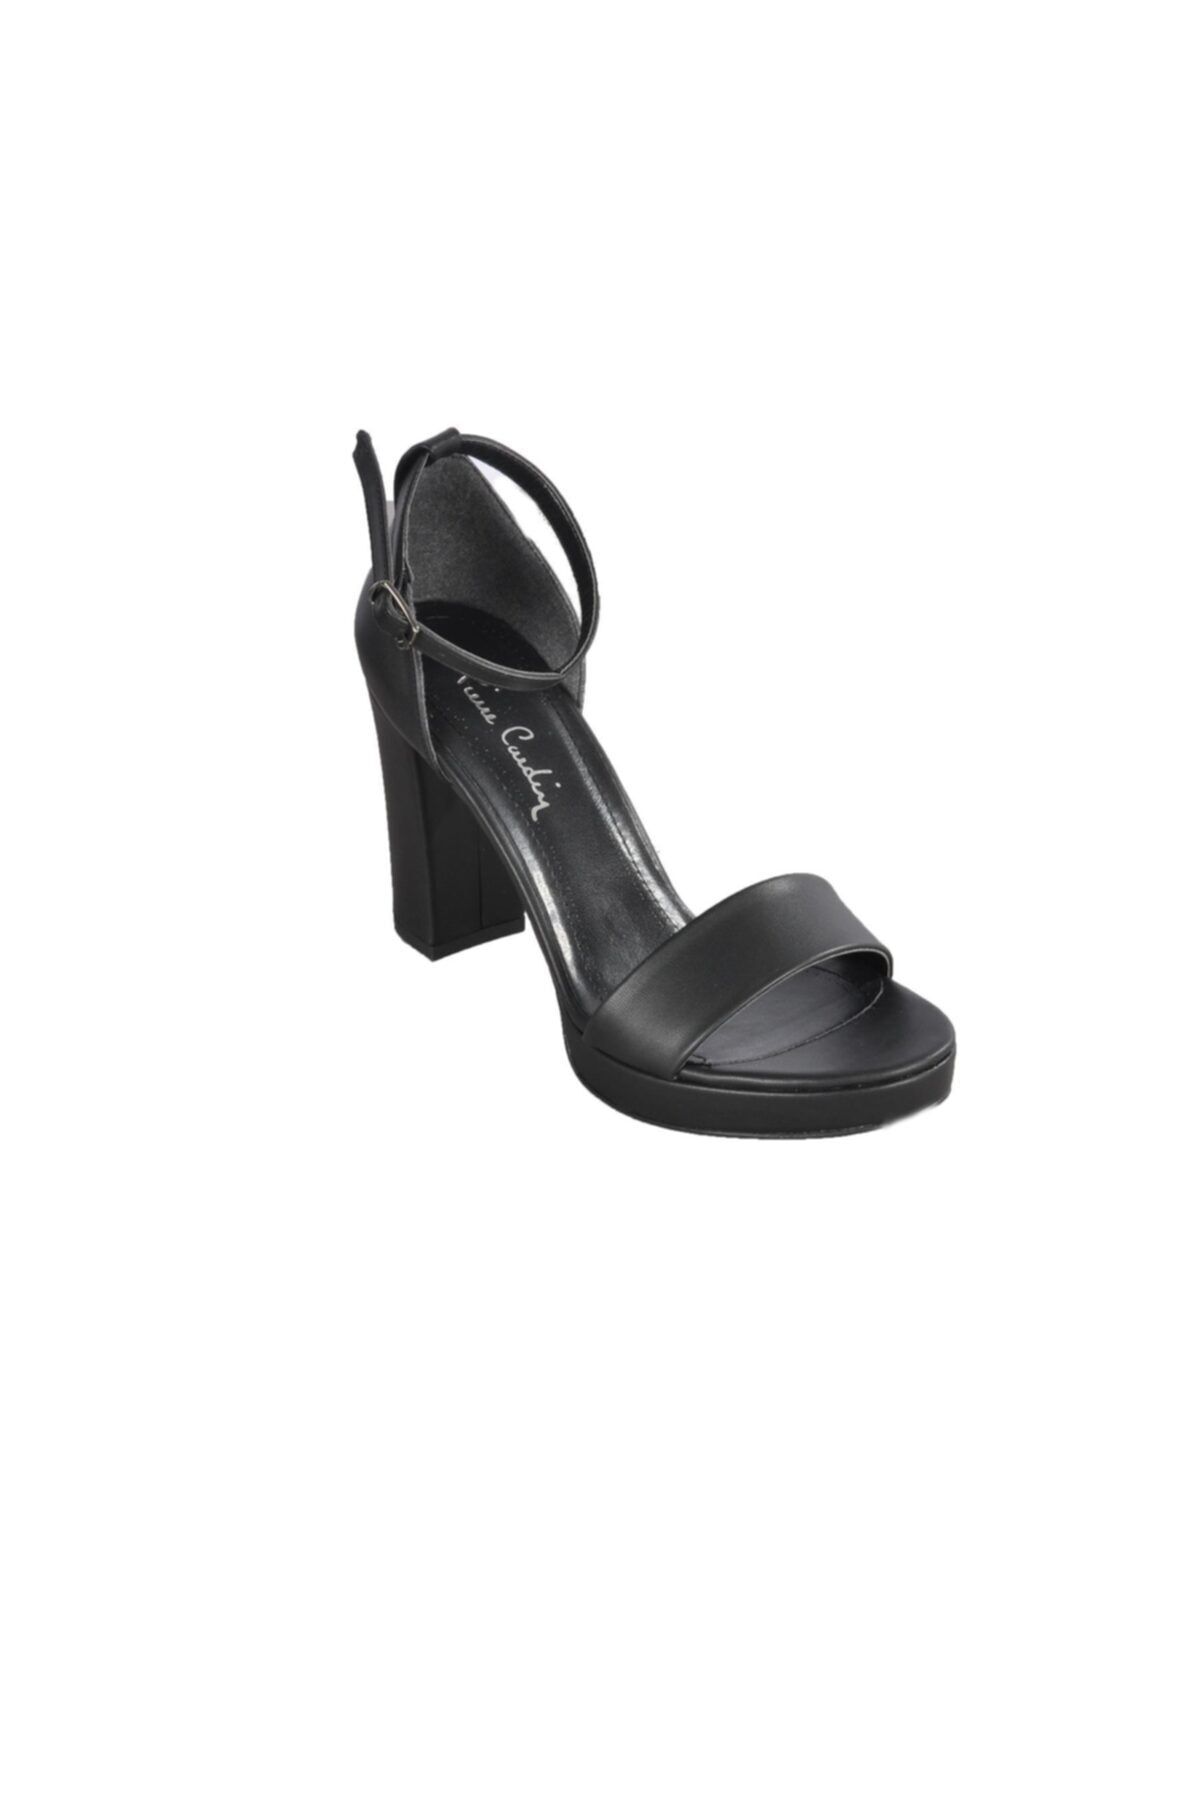 Pierre Cardin Kadın Siyah Topuklu Ayakkabı Pc-50167